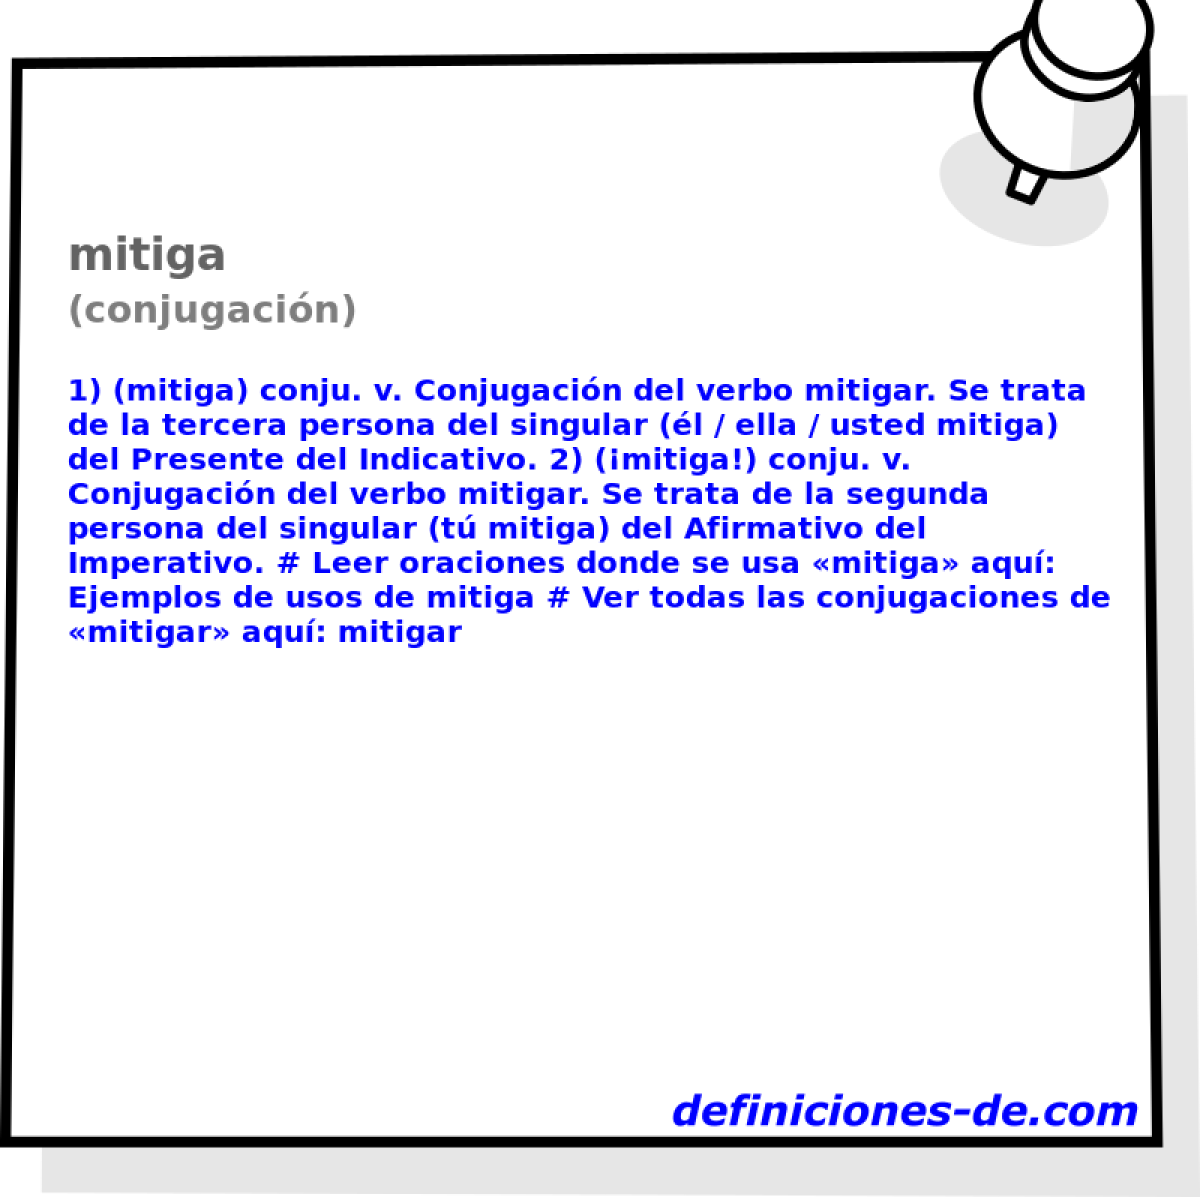 mitiga (conjugacin)